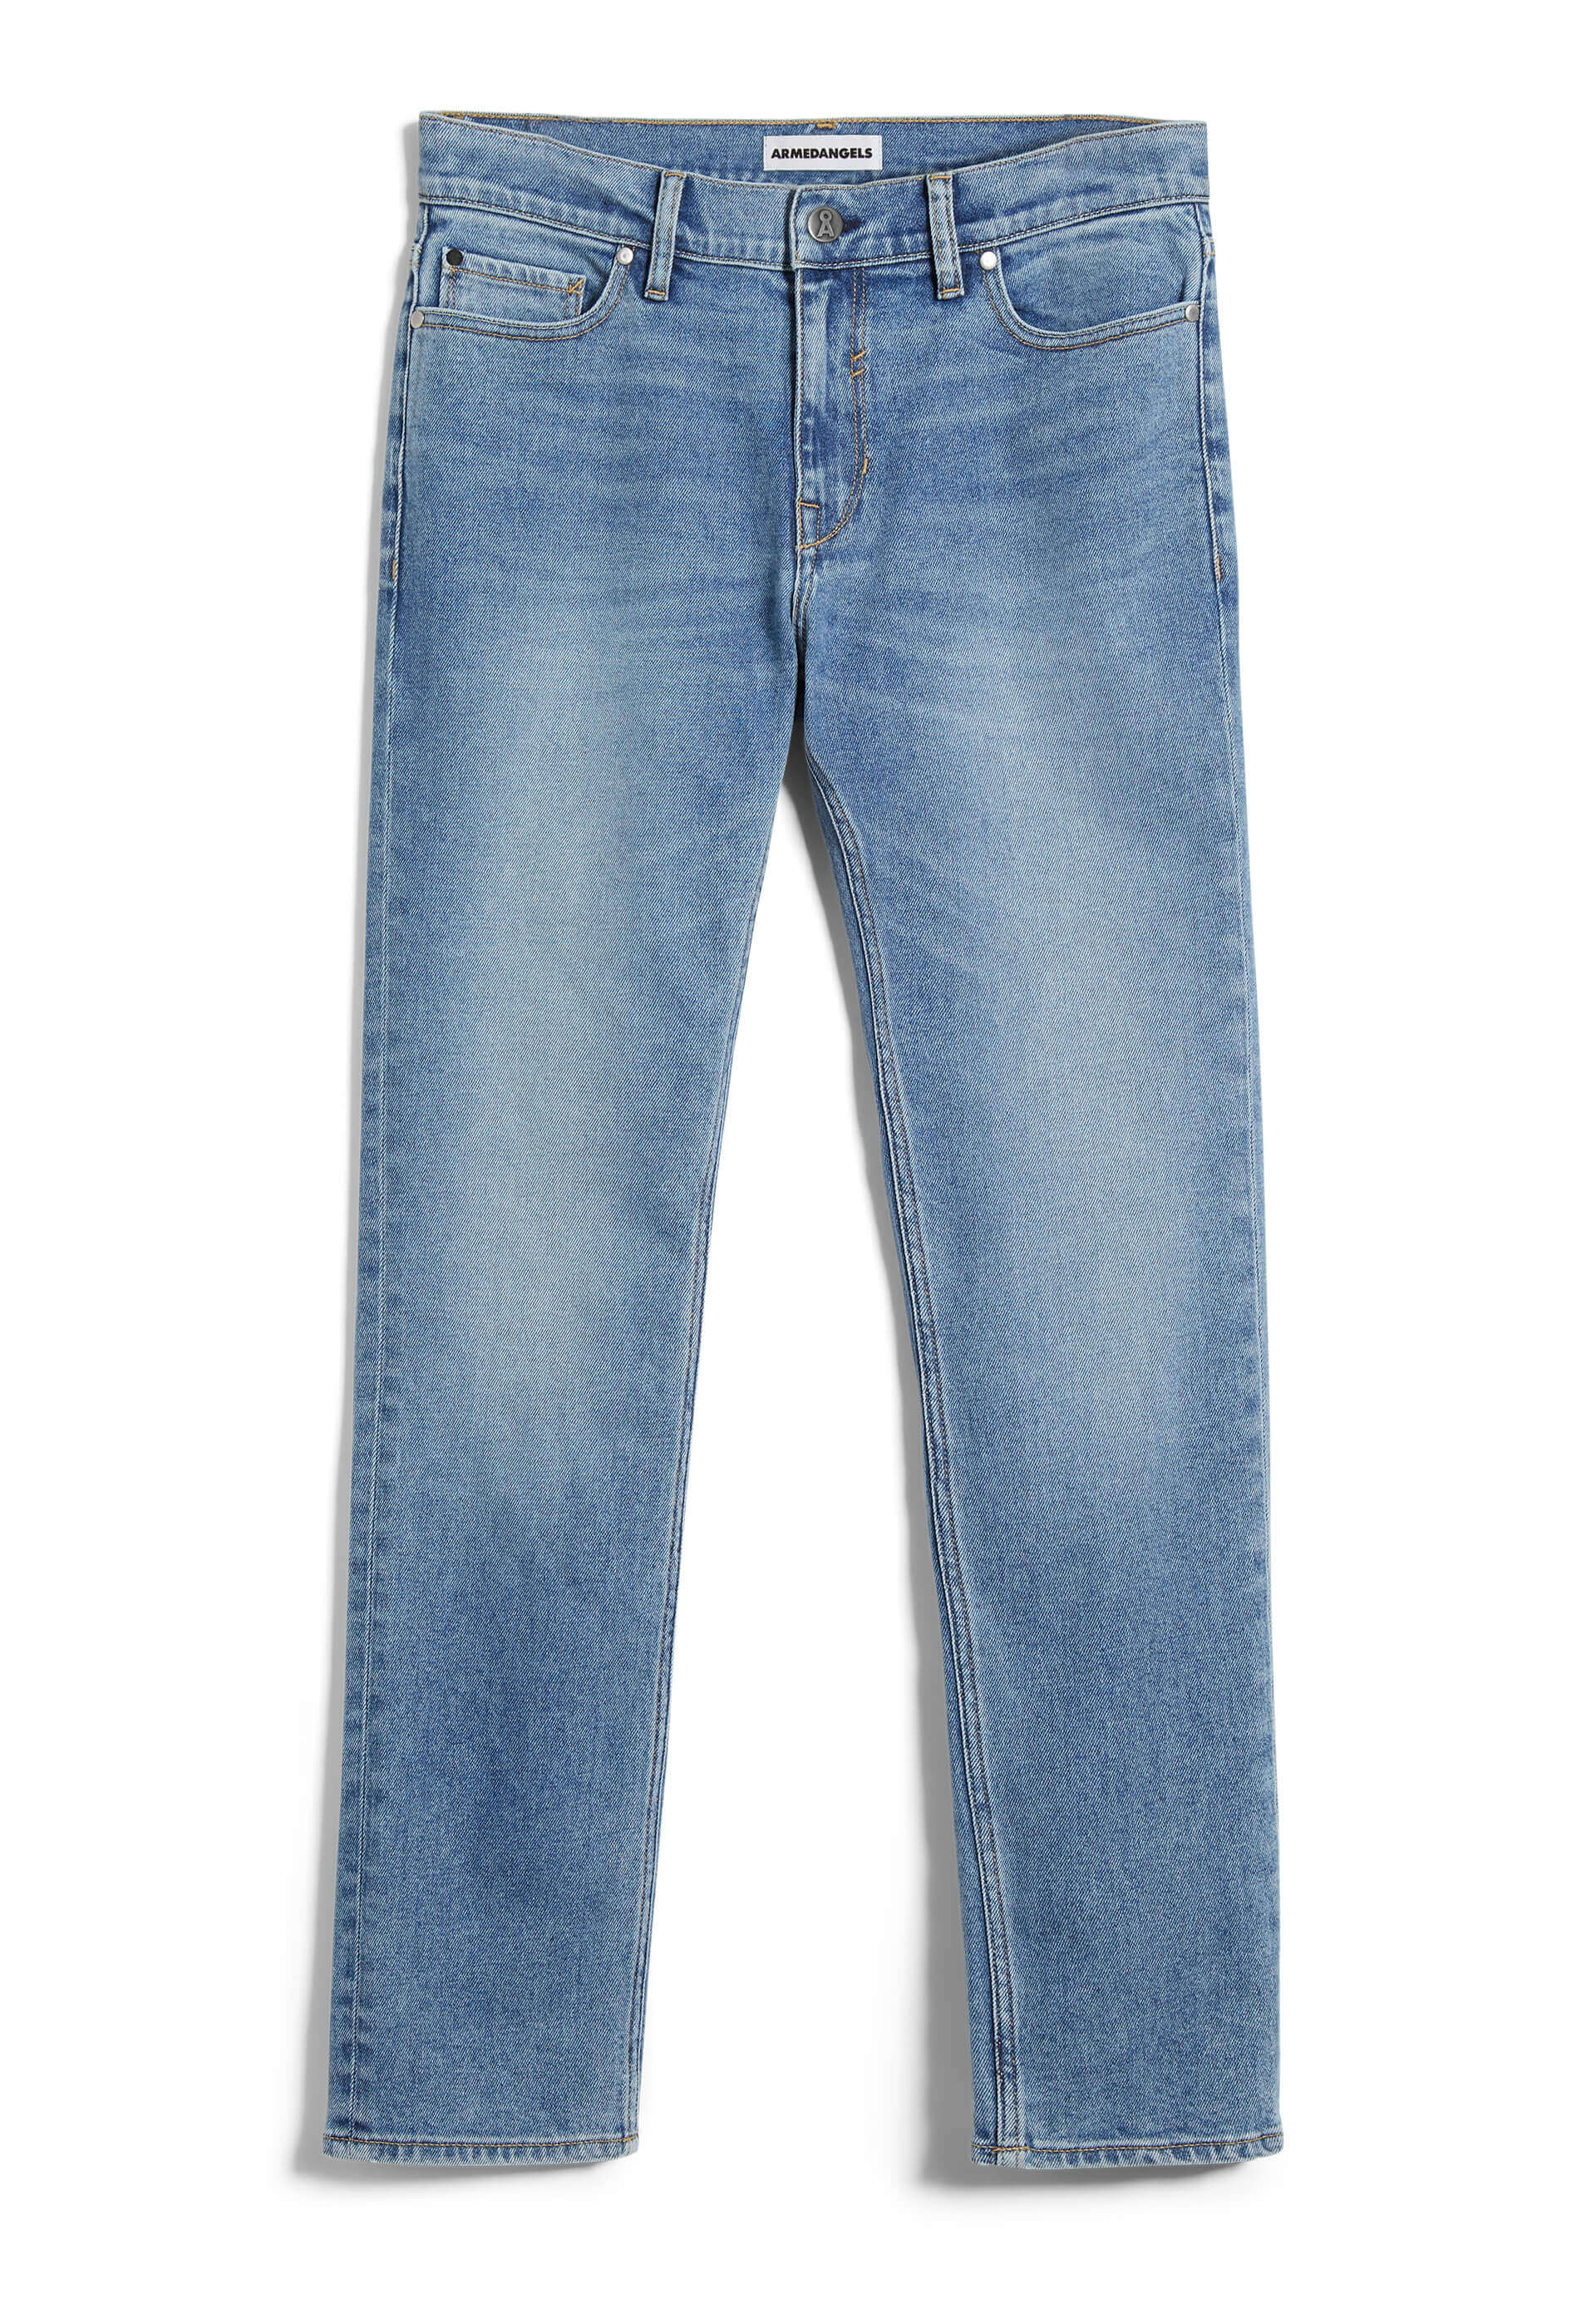 ARMEDANGELS Jeans Slim Fit Iaan light authentic 31/32